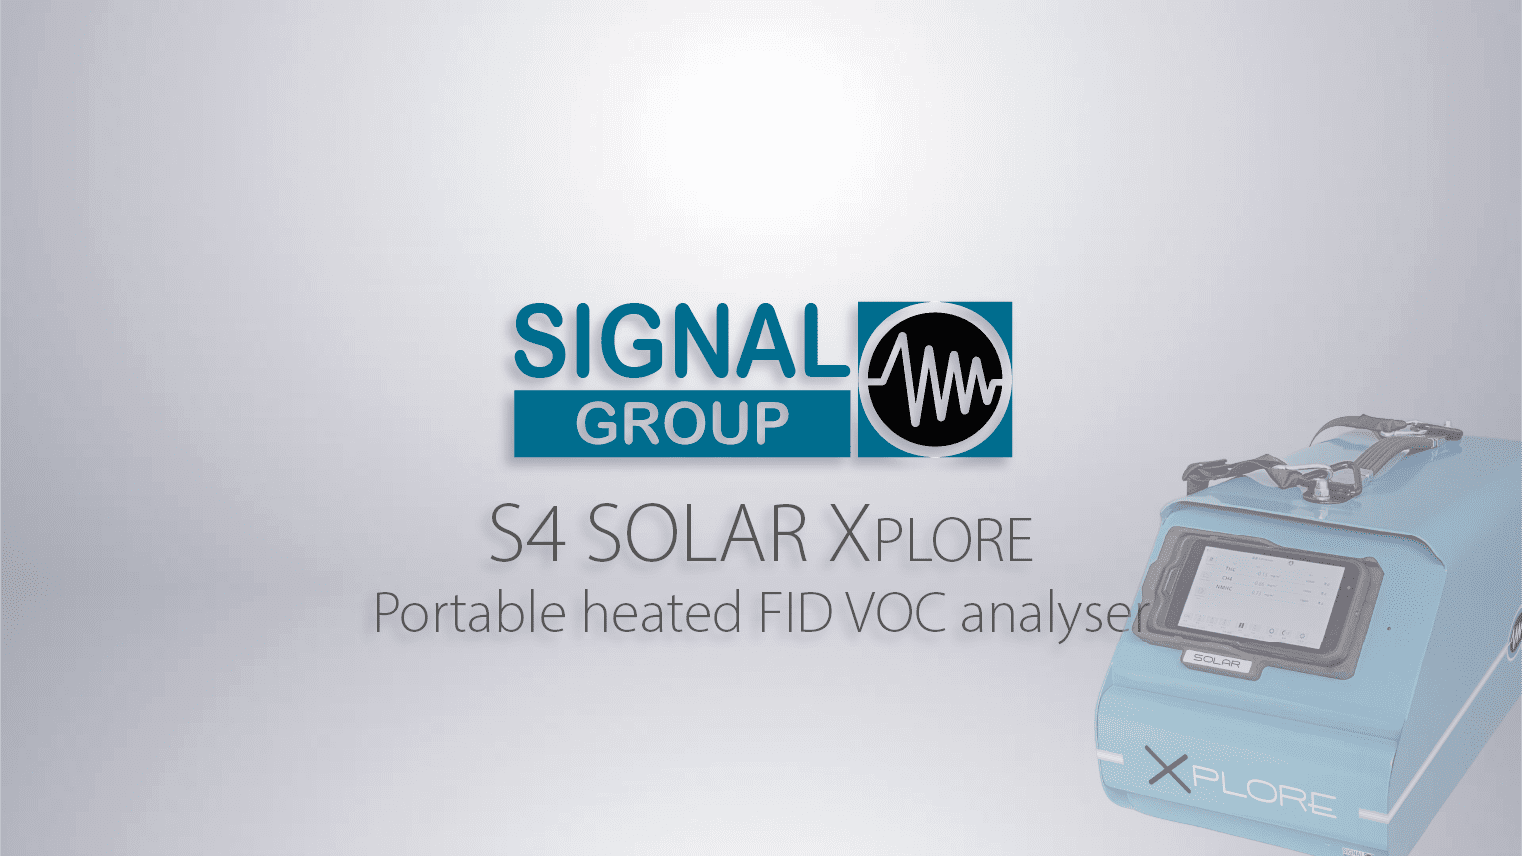 S4 SOLAR XPLORE - Product Launch